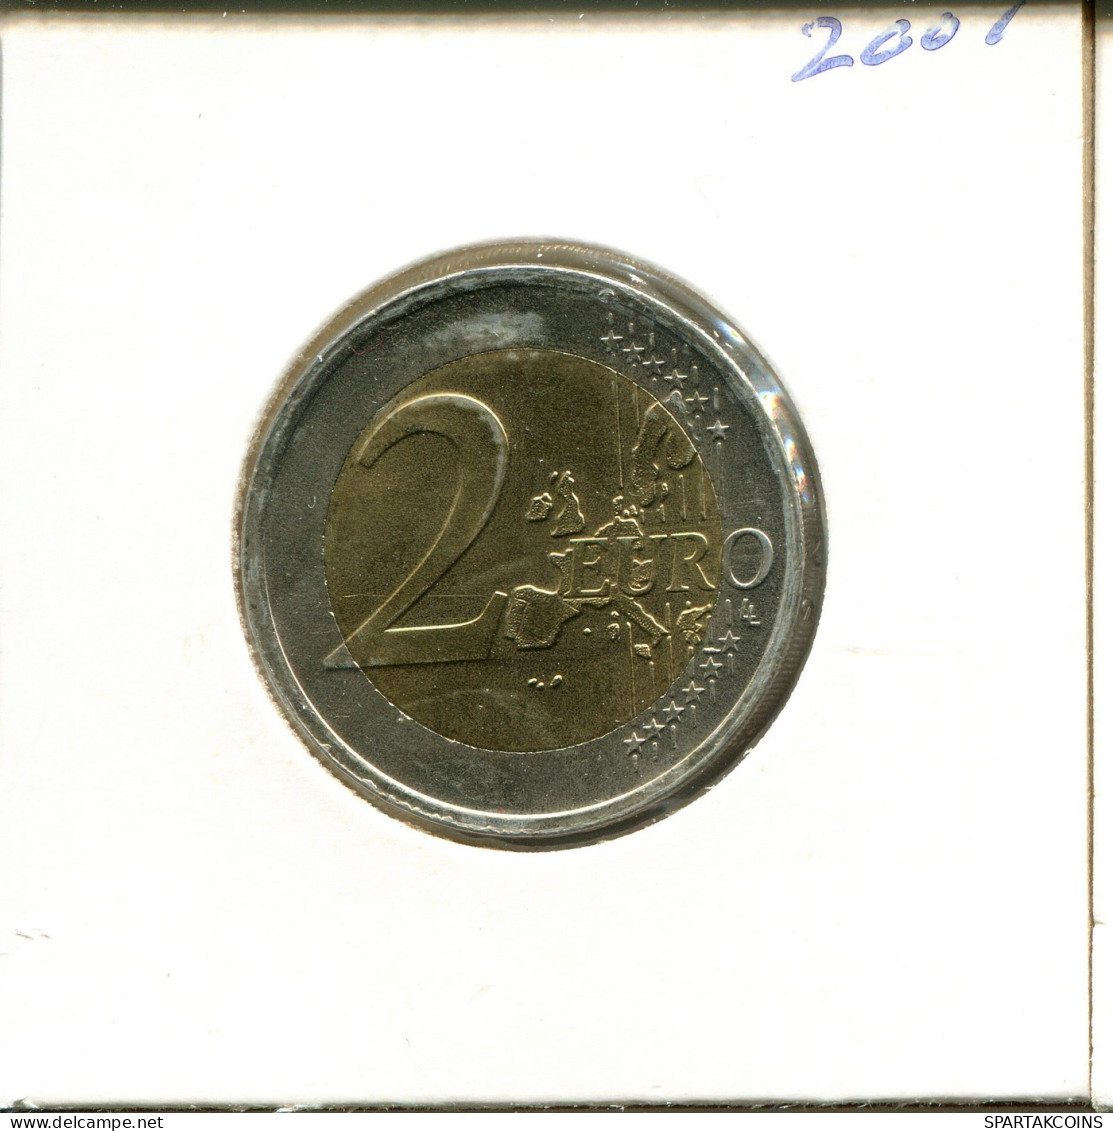 2 EURO 2001 NETHERLANDS Coin #EU266.U.A - Paesi Bassi